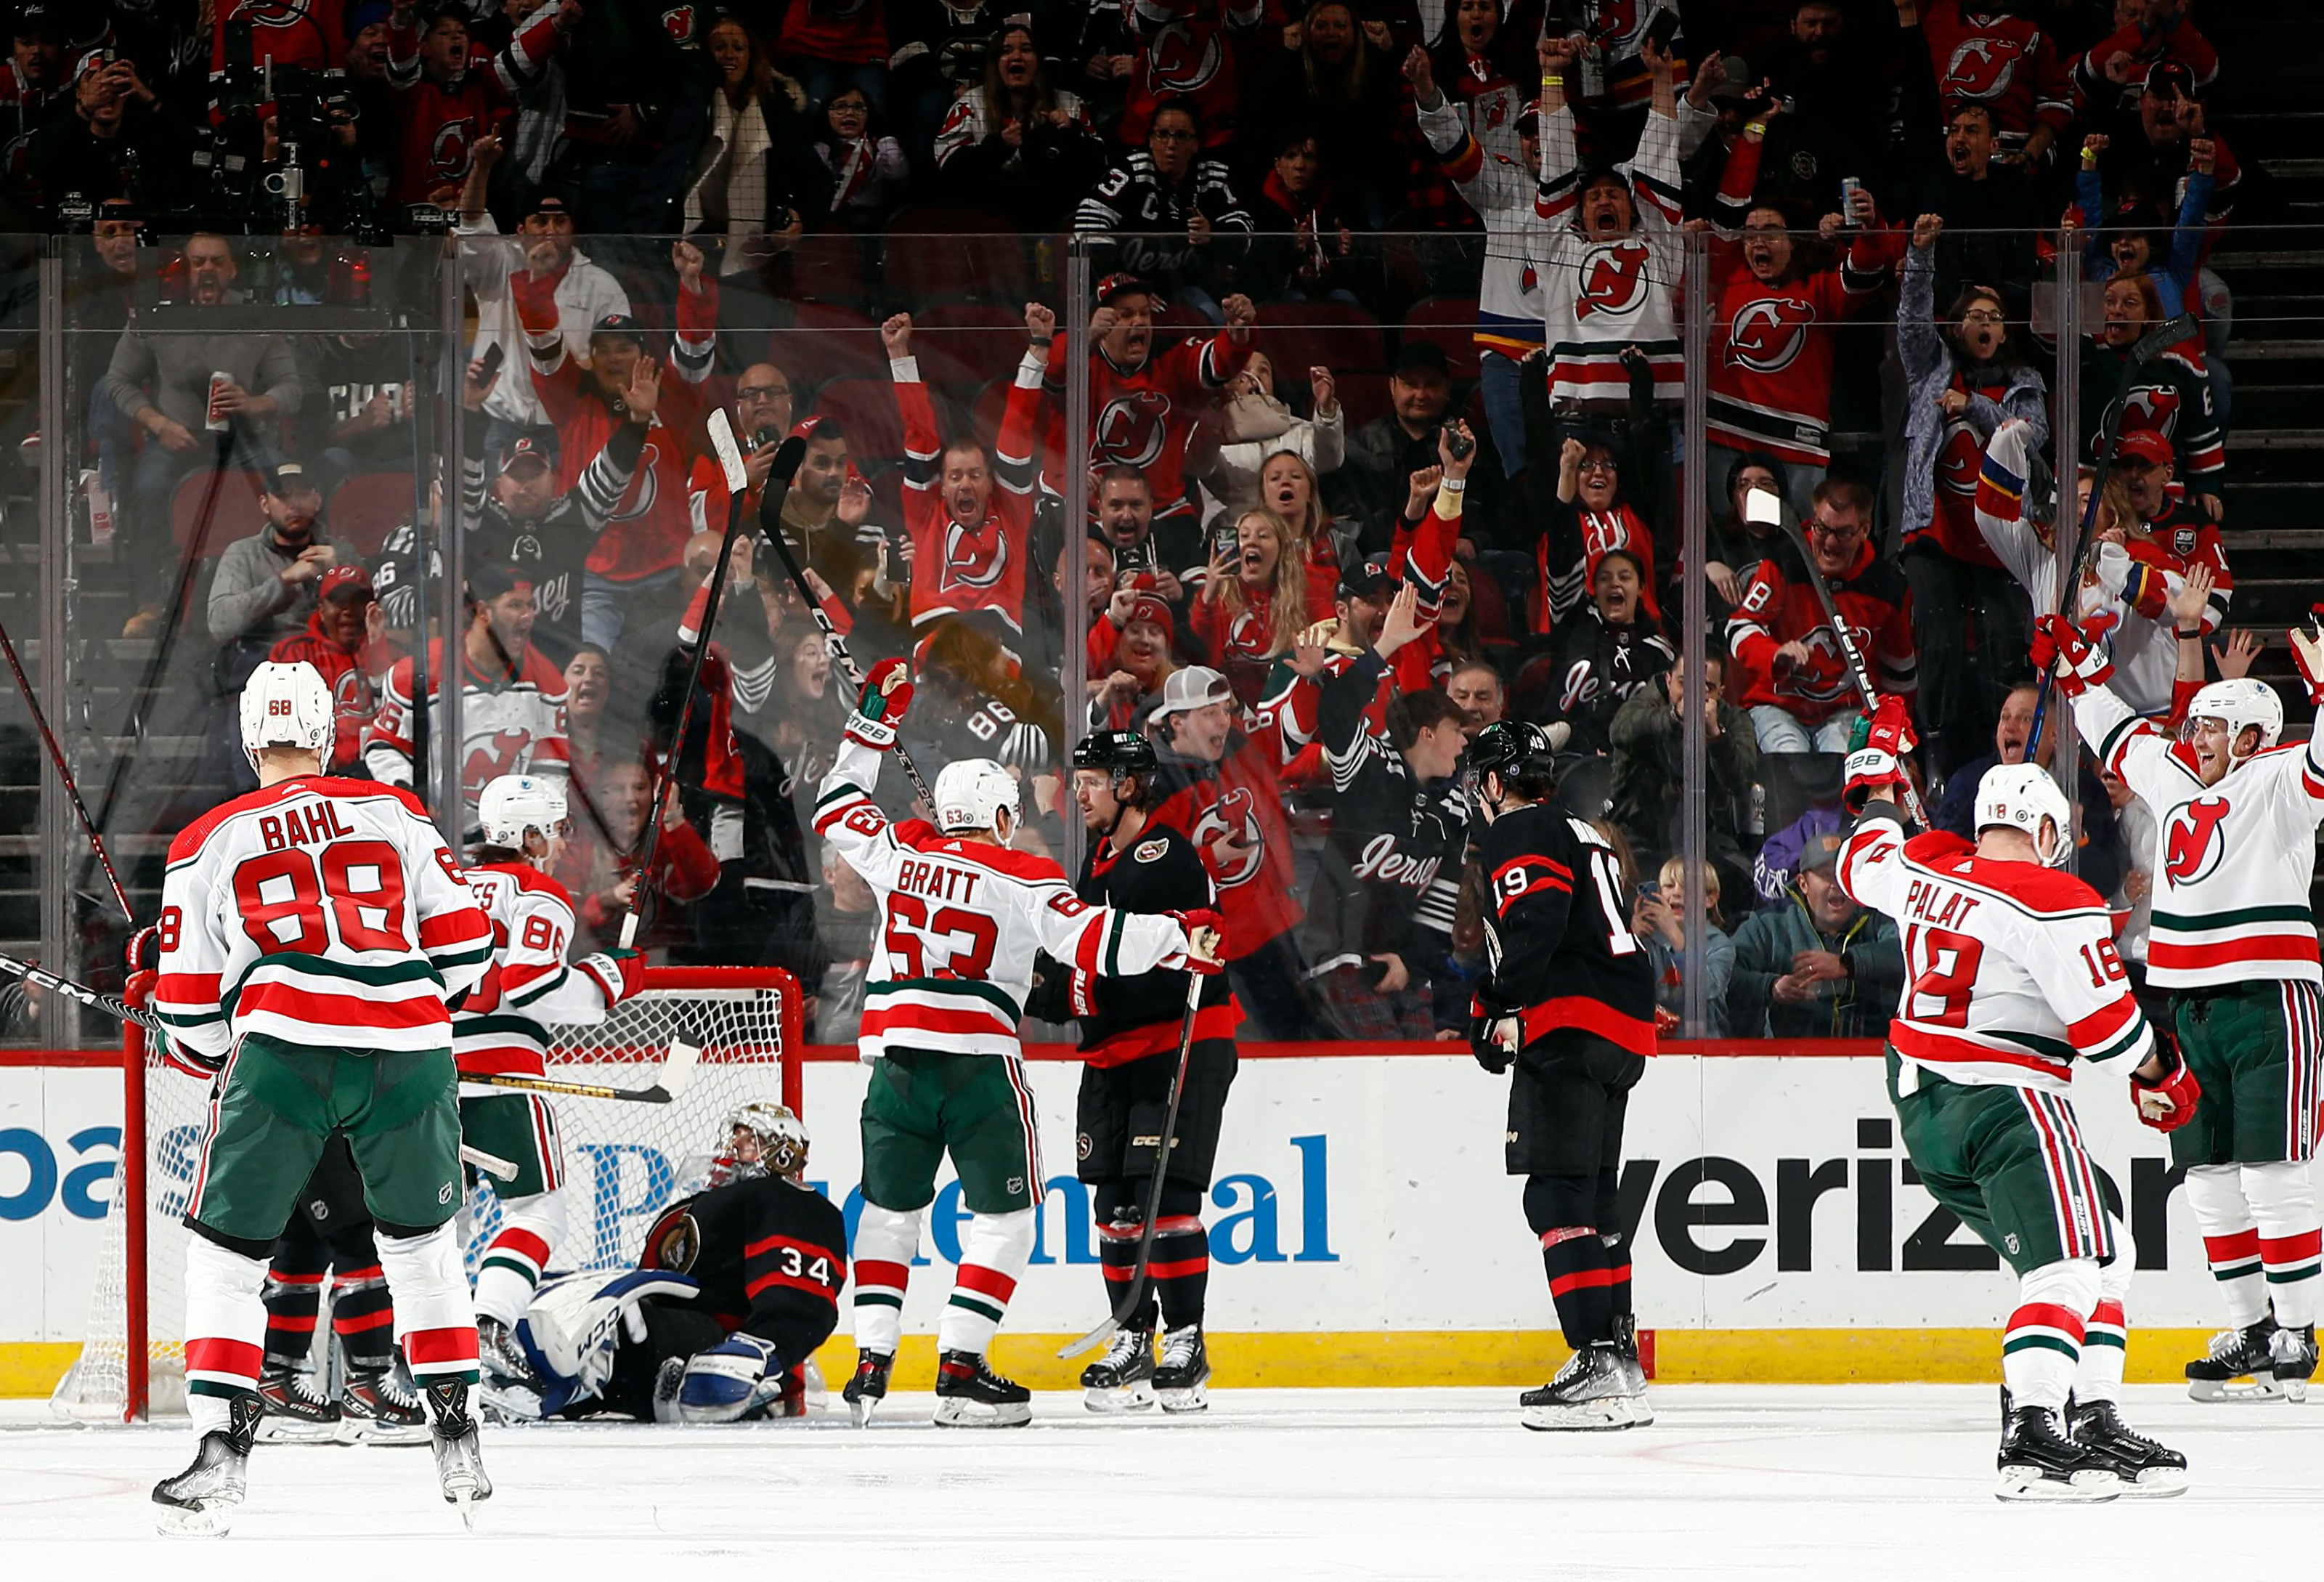 Devils defeat Senators 5-3, clinch playoff berth - NBC Sports